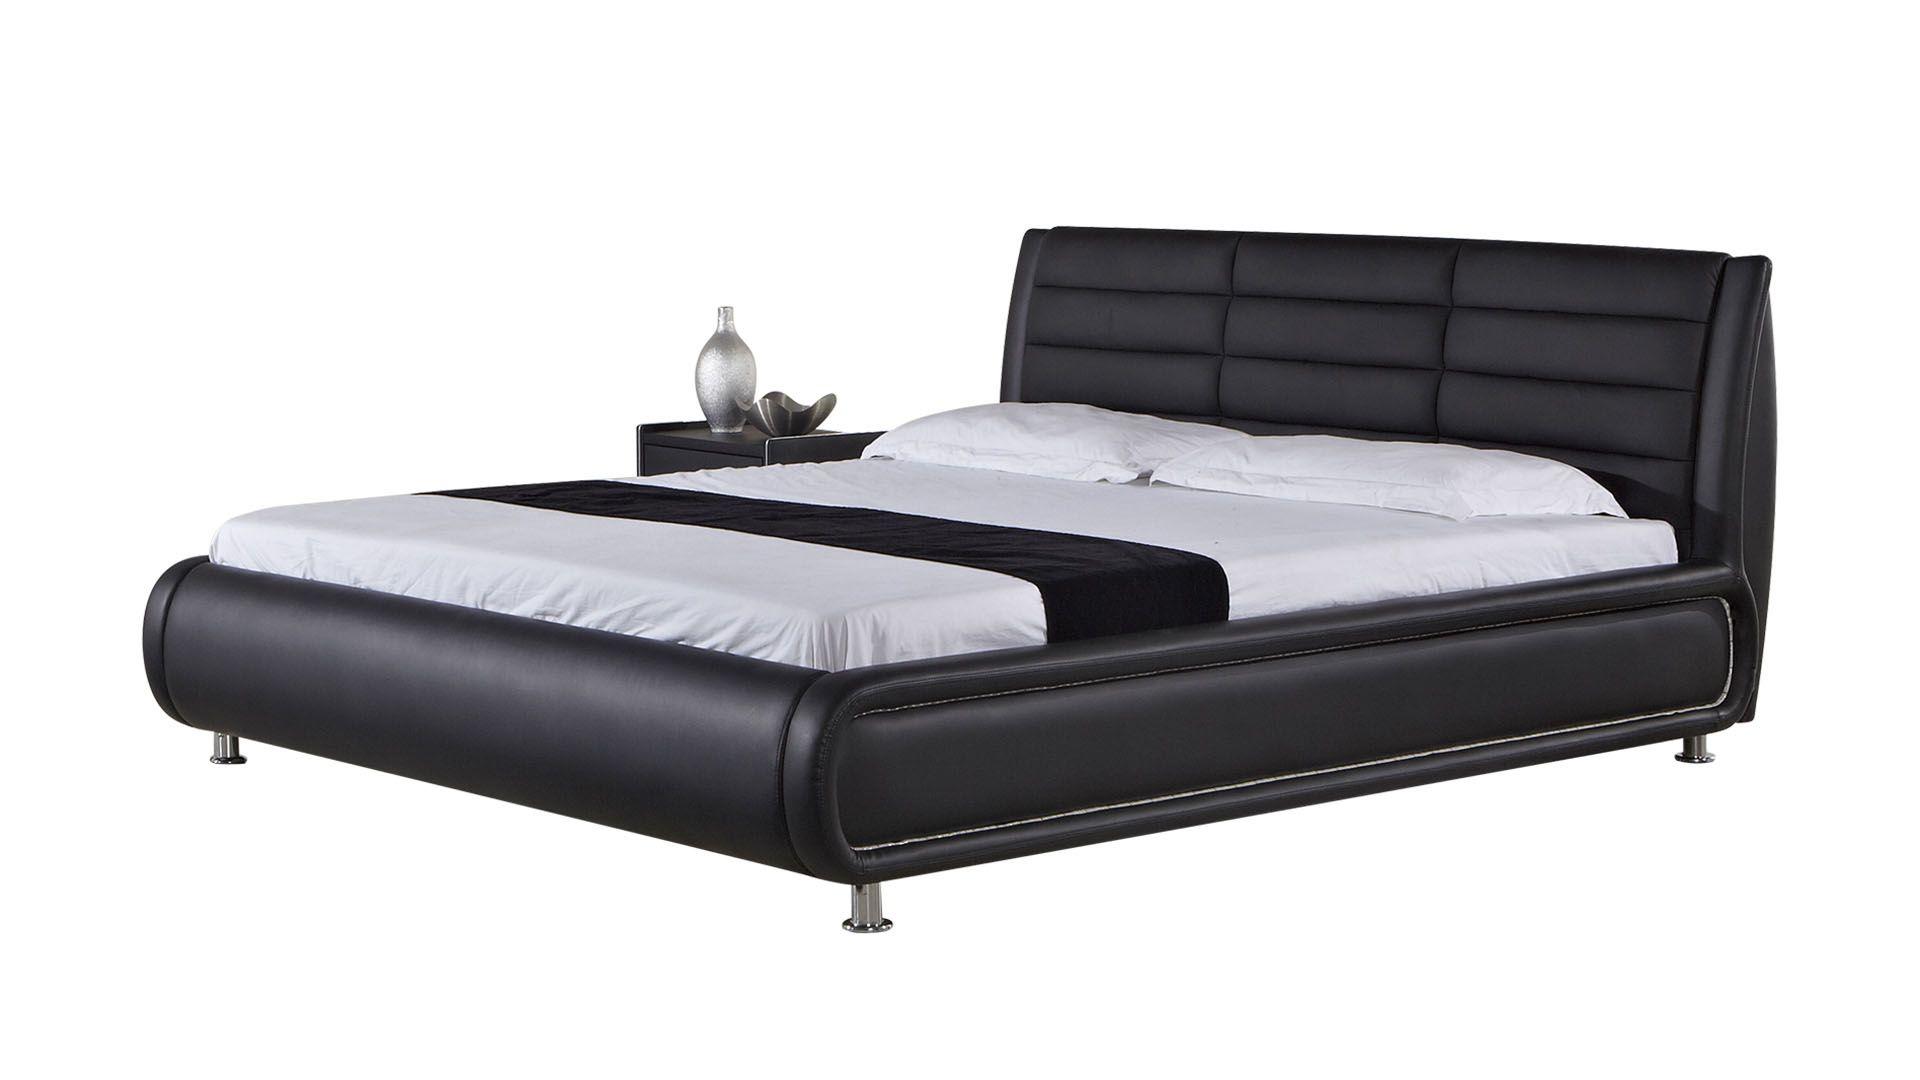 

    
B-D019-BK-Q American Eagle Furniture Platform Bed
